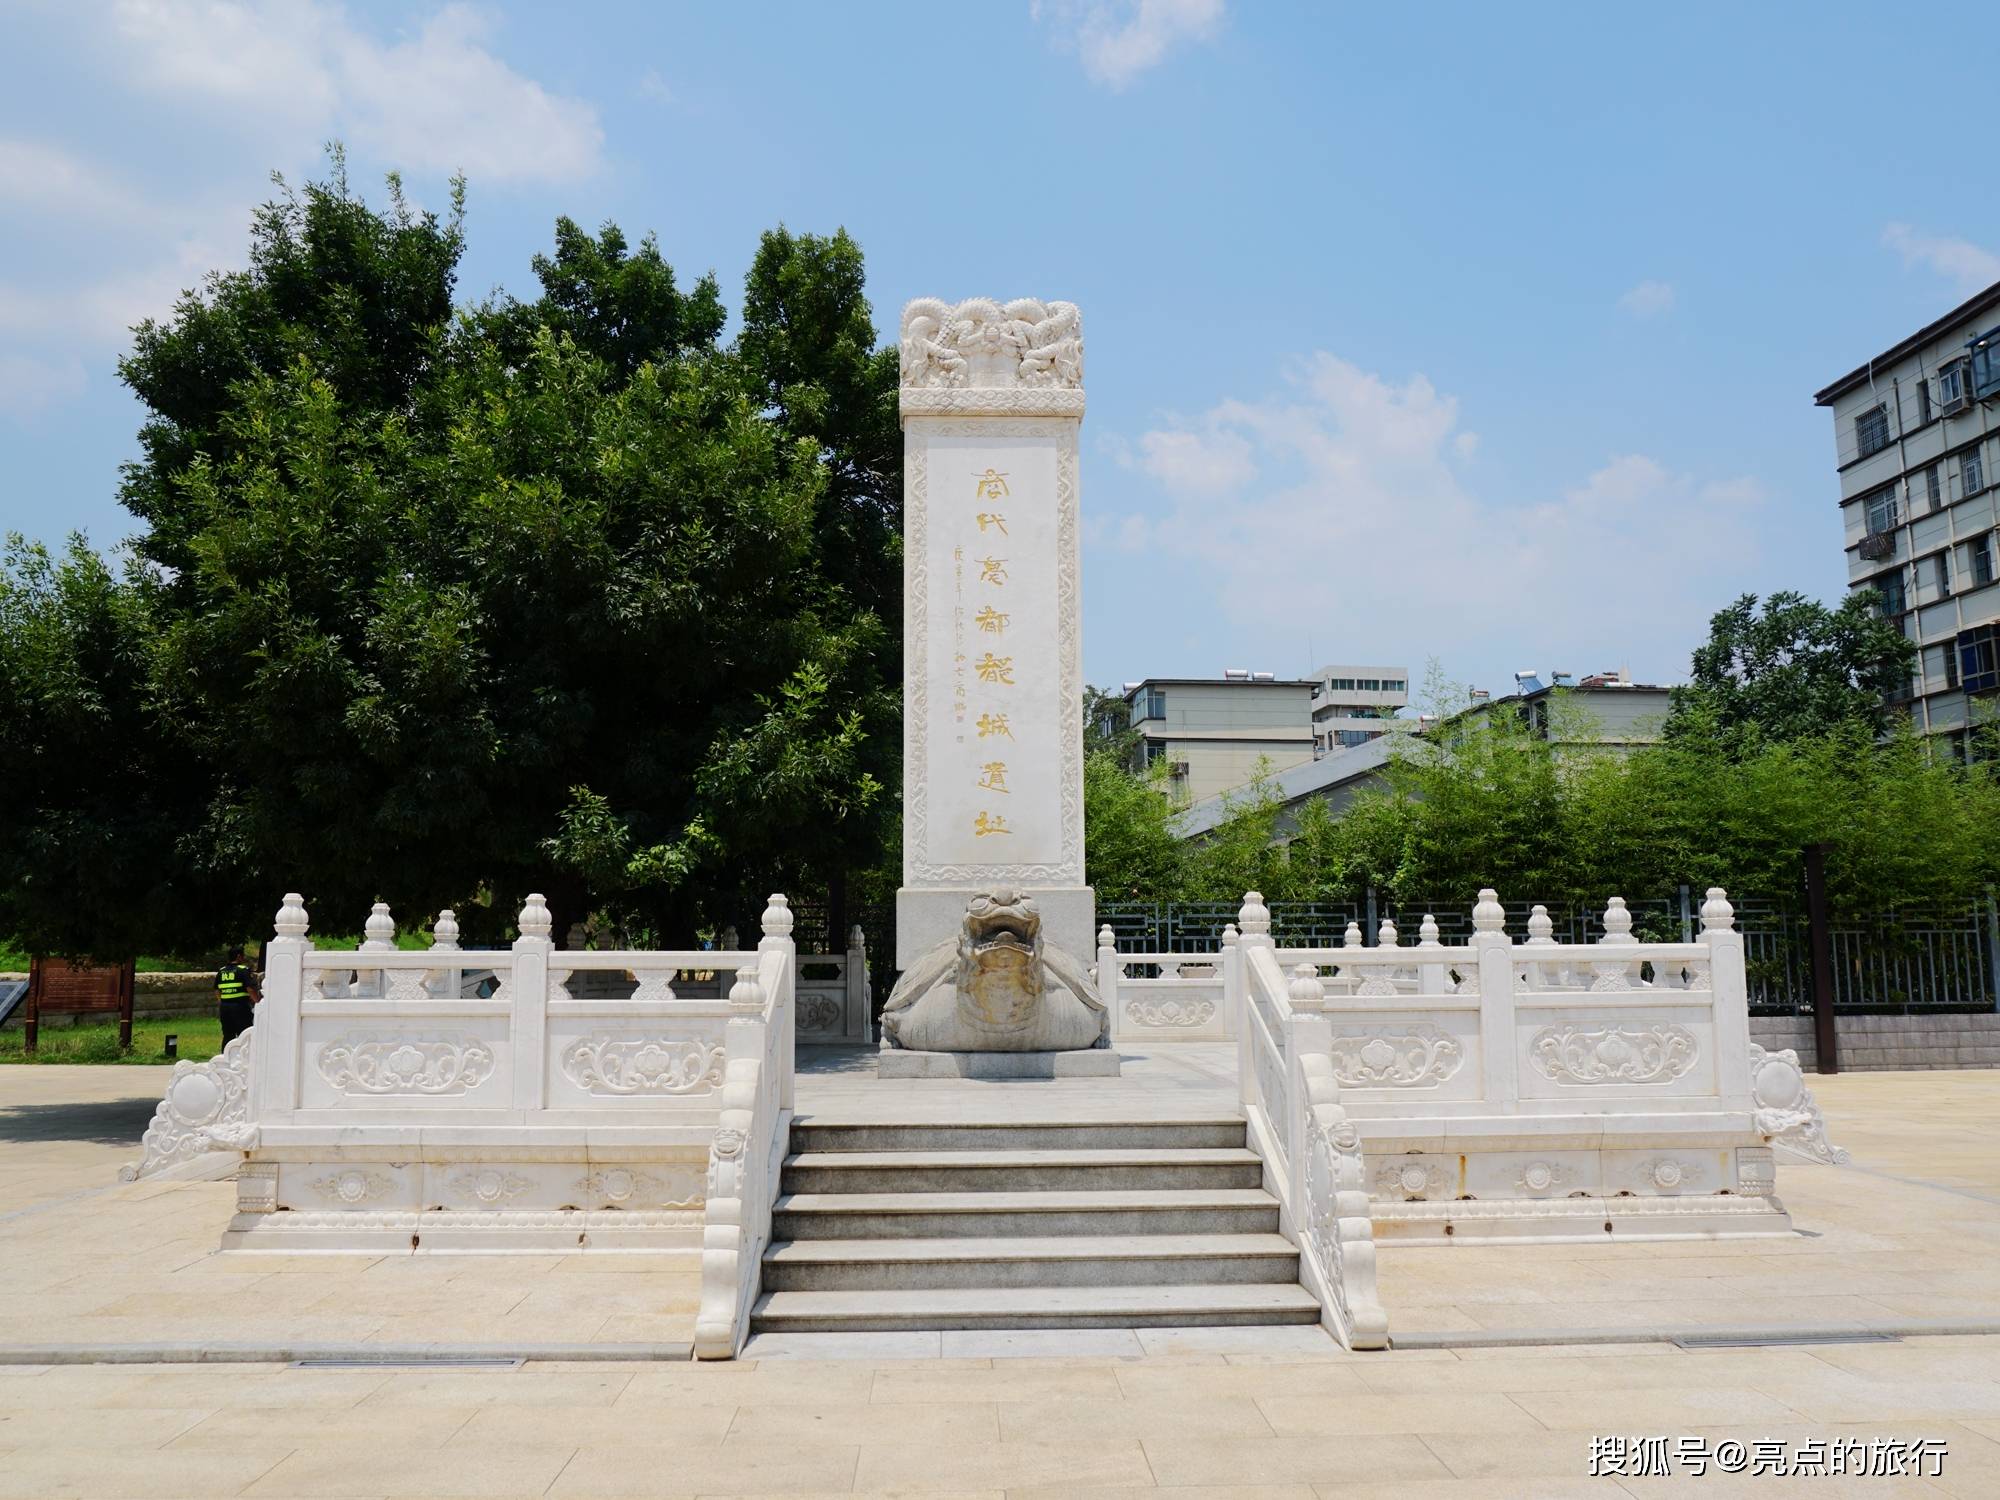 原创郑州商都遗址公园3600年历史的王都遗址游览小贴士